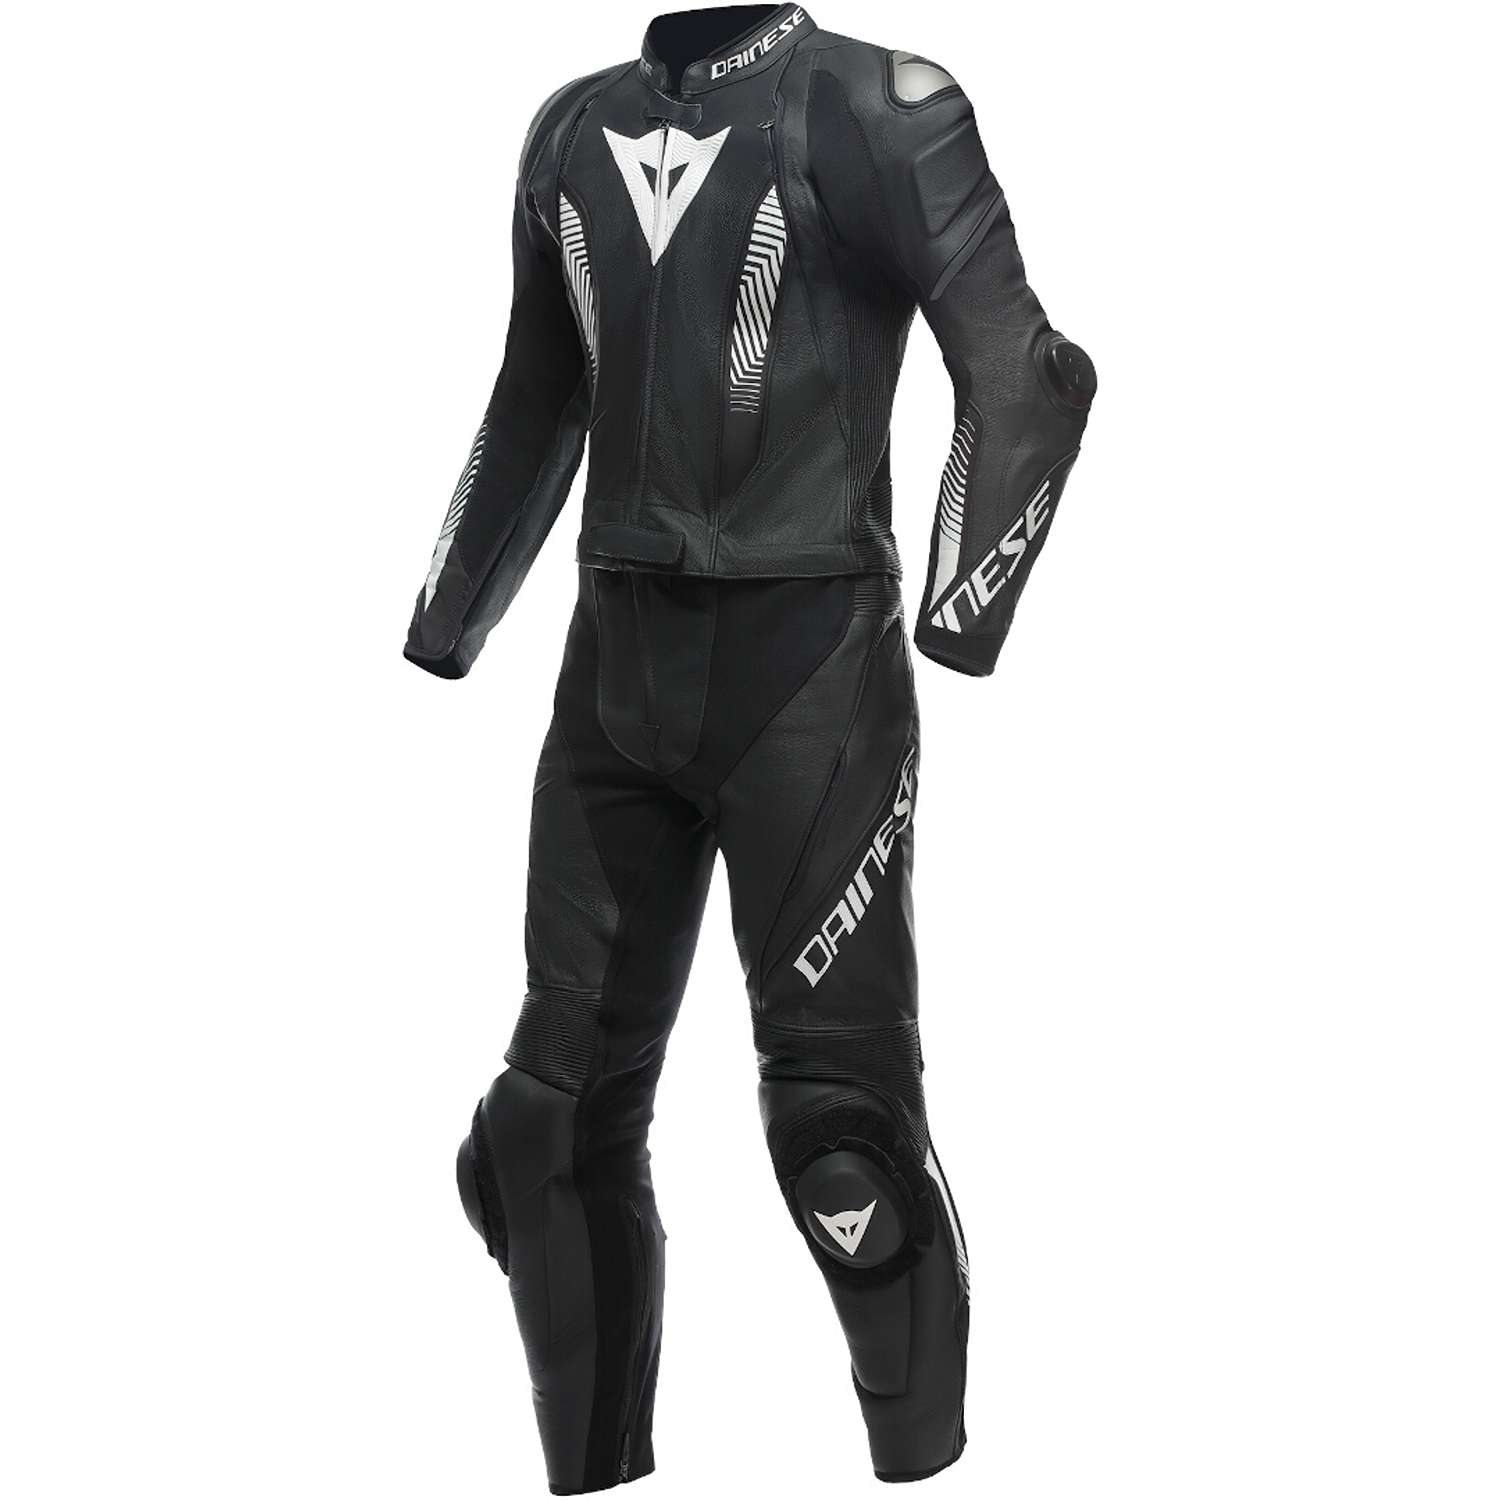 Image of Dainese Laguna Seca 5 2Pcs Leather Suit Black White Size 62 ID 8051019497048